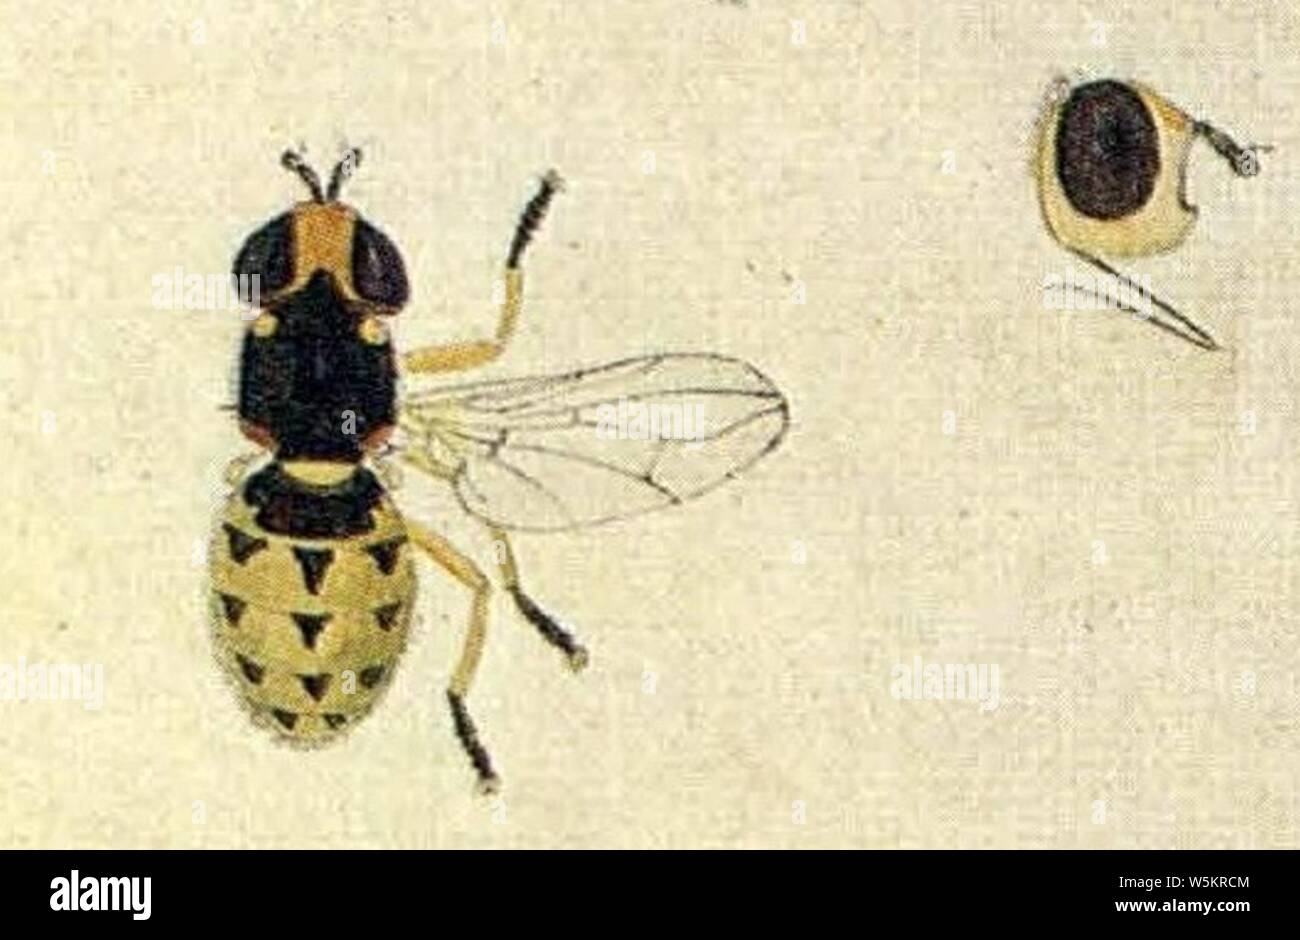 Dalmannia punctata (EuropäischenZweiflügeligen Meigen 1790). Stock Photo